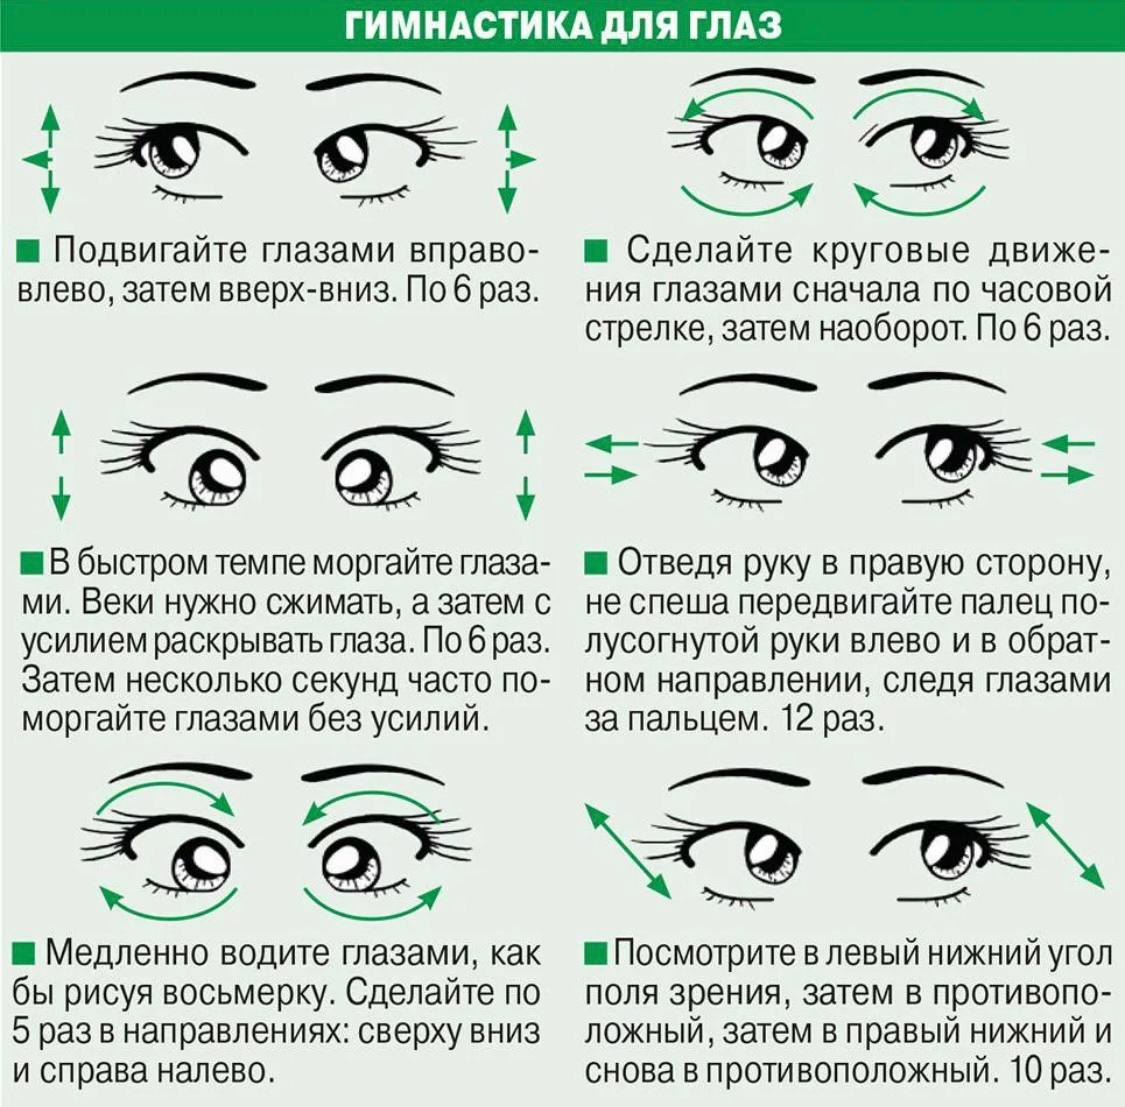 Что есть для глаз и зрения. Гимнастика для глаз для улучшения зрения комплекс упражнений. Упражнения для глаз для улучшения зрения при близорукости. Упражнения для глаз для улучшения зрения при близорукости для детей. Комплекс упражнений для коррекции зрения 10 упражнений.